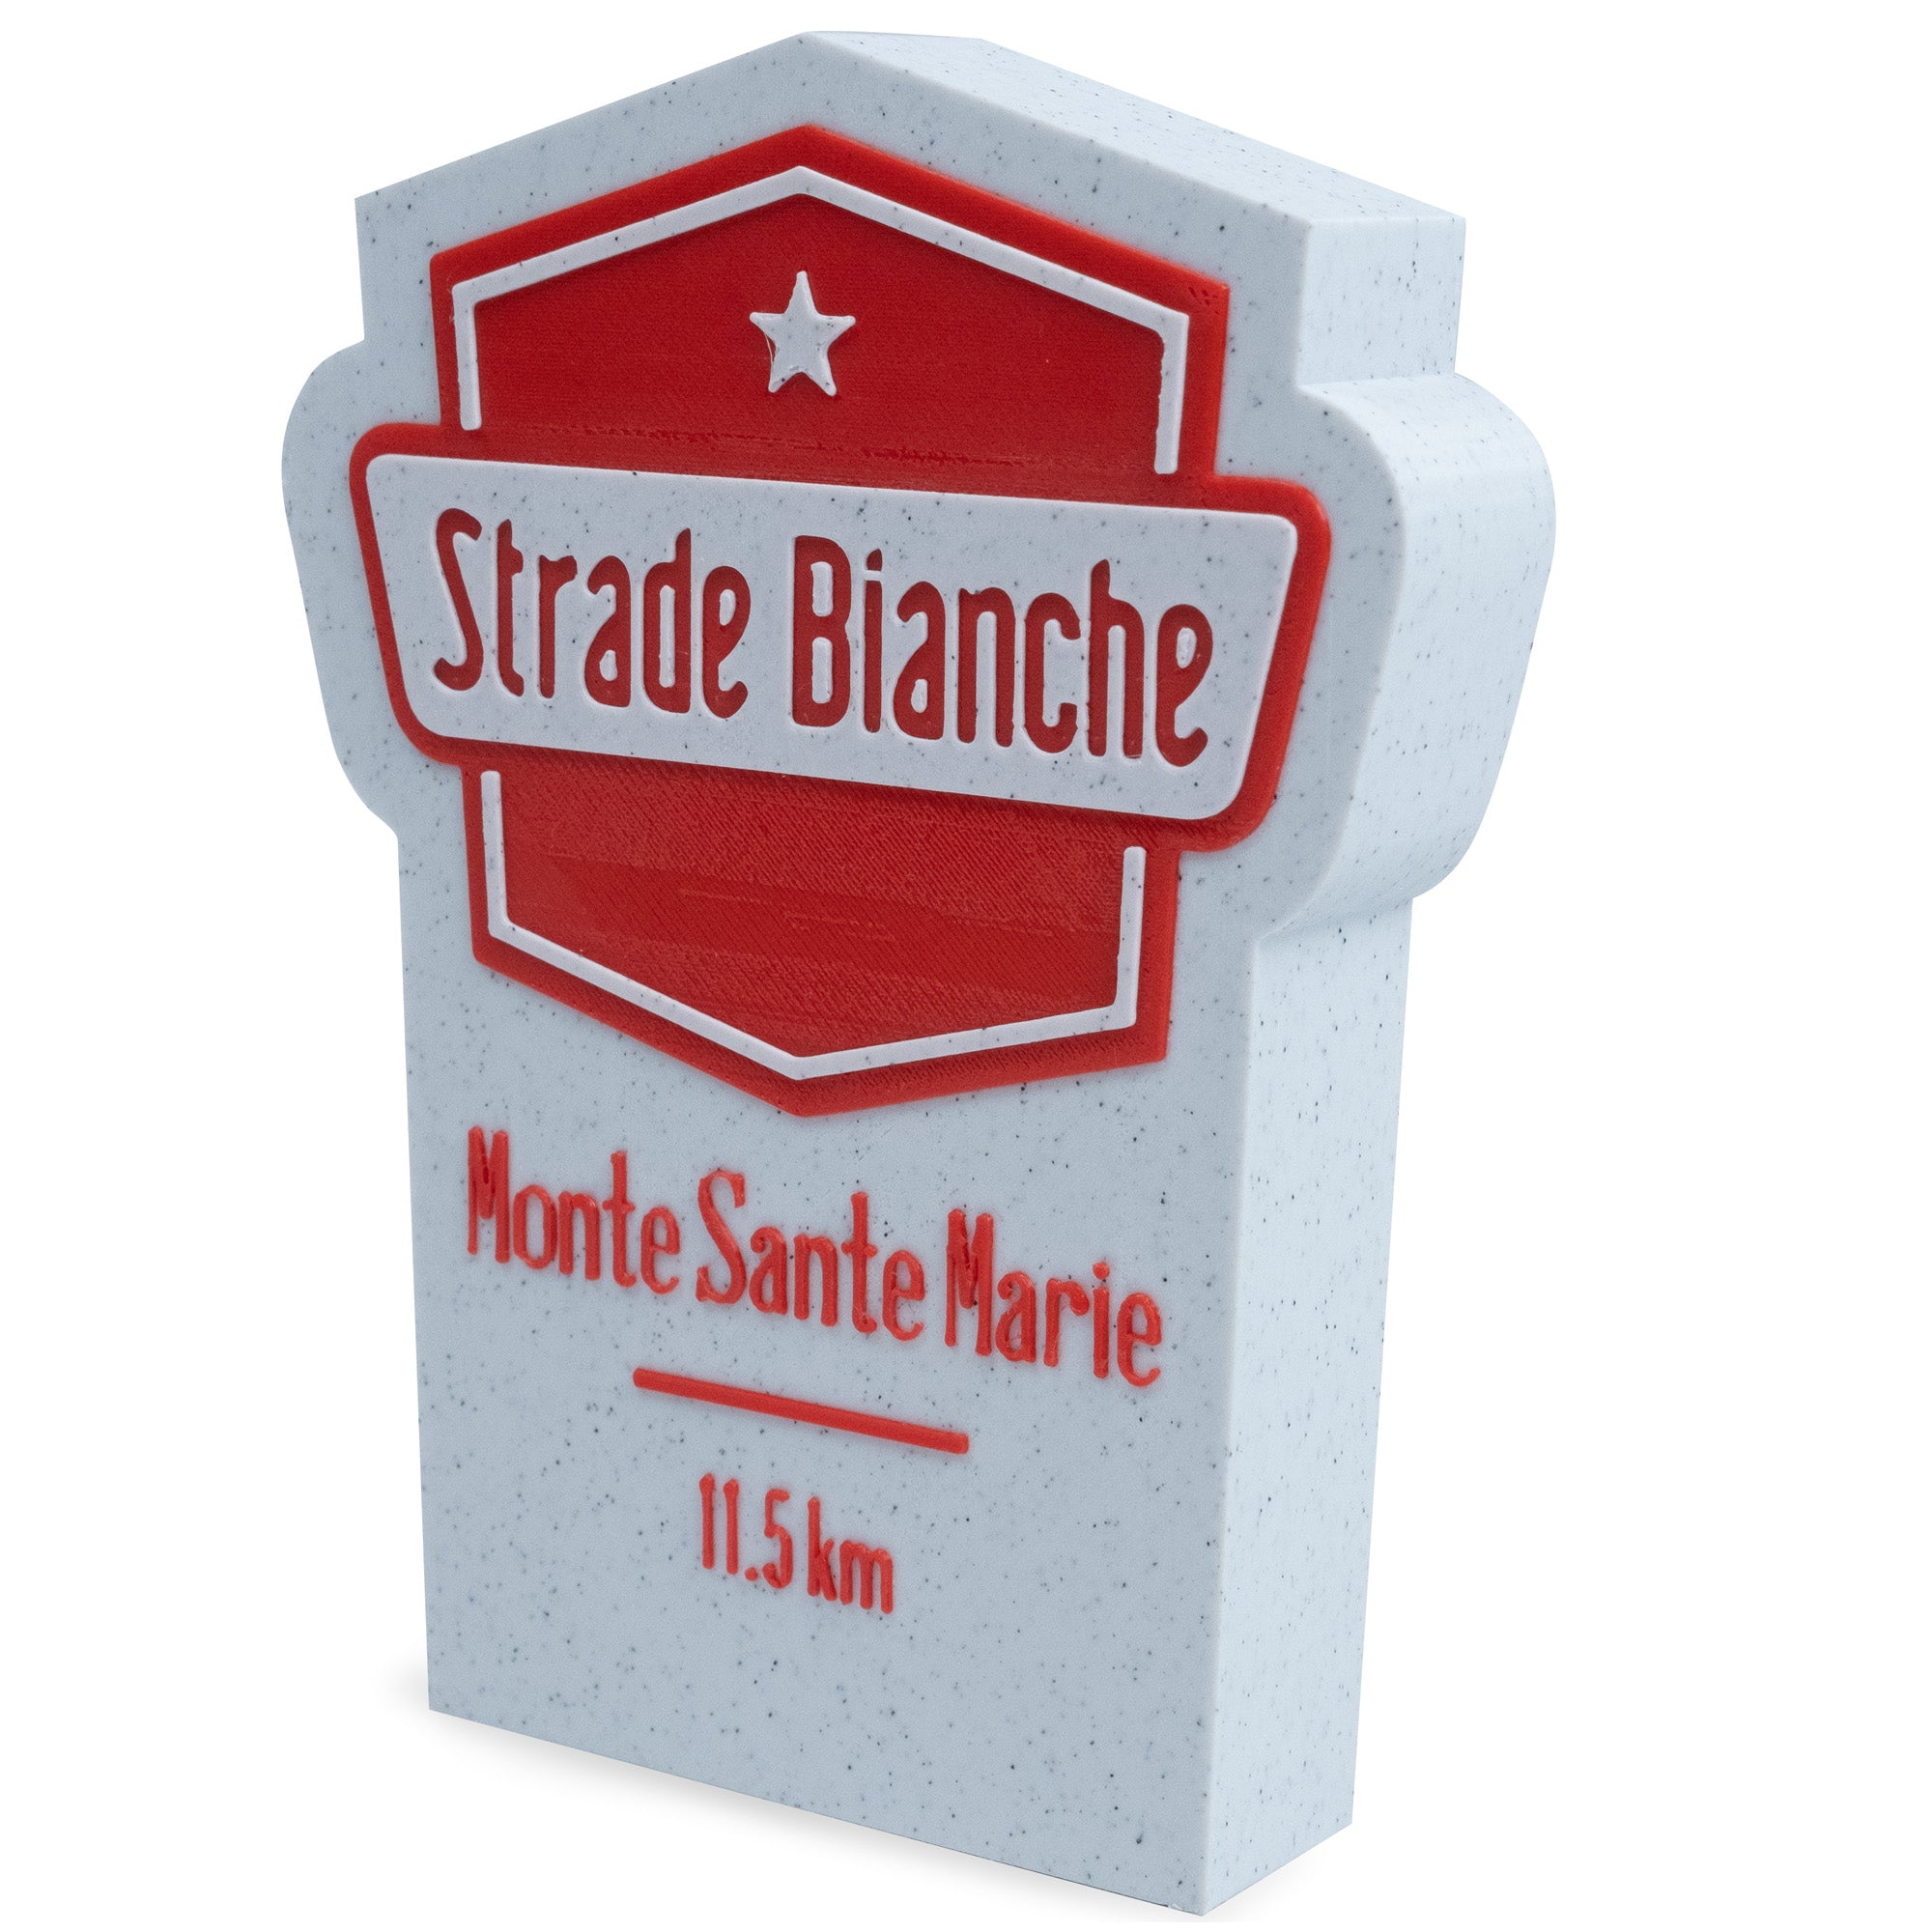 Strade Bianche miniature milestone 